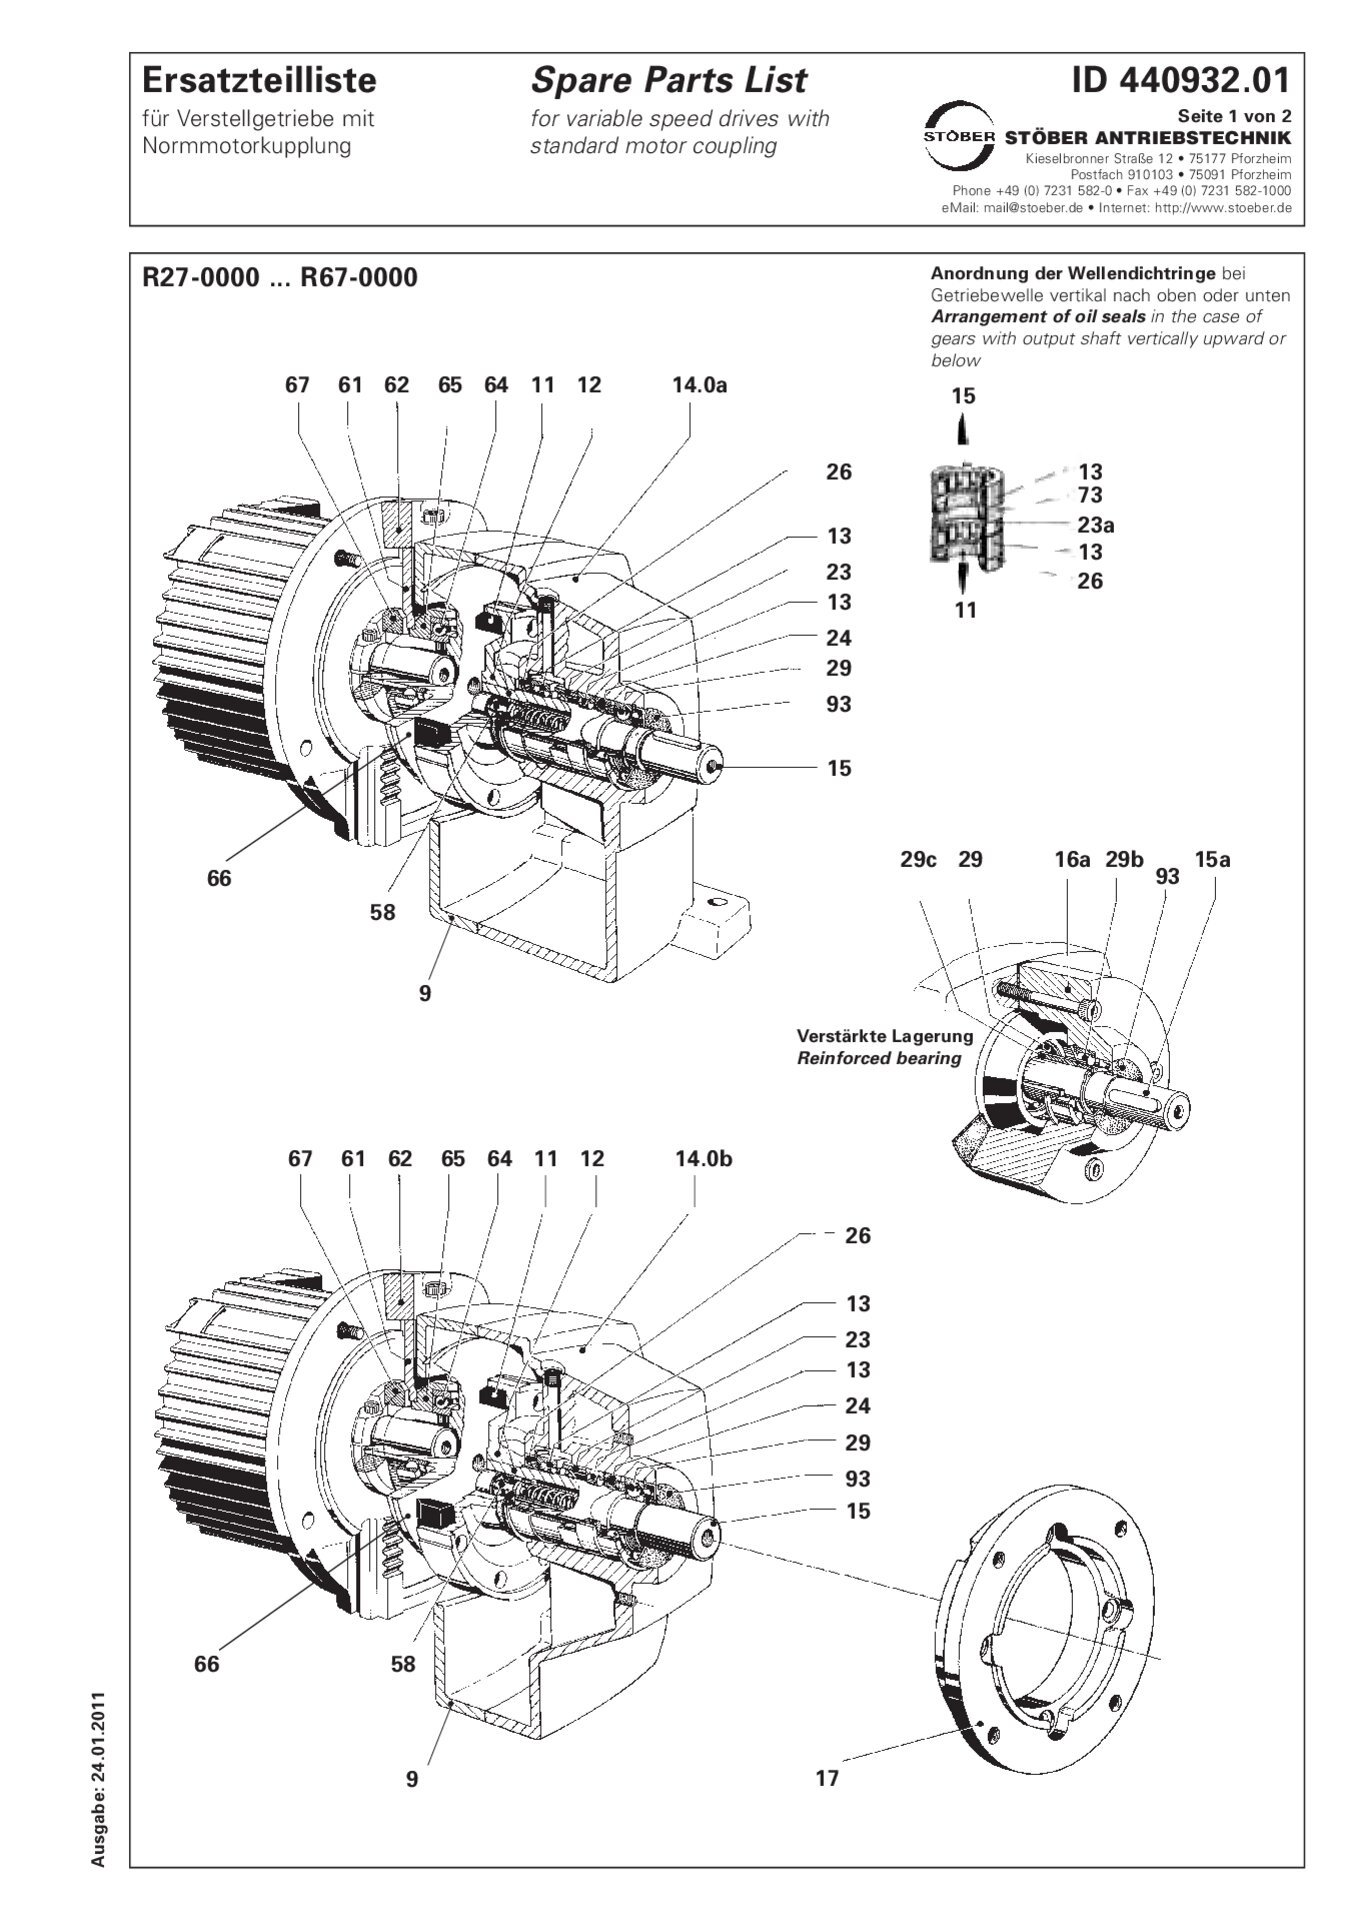 Listino dei pezzi di ricambio R27-0/R37-0/R47-0/R57-0/R67-0 con accoppiamento motore standard